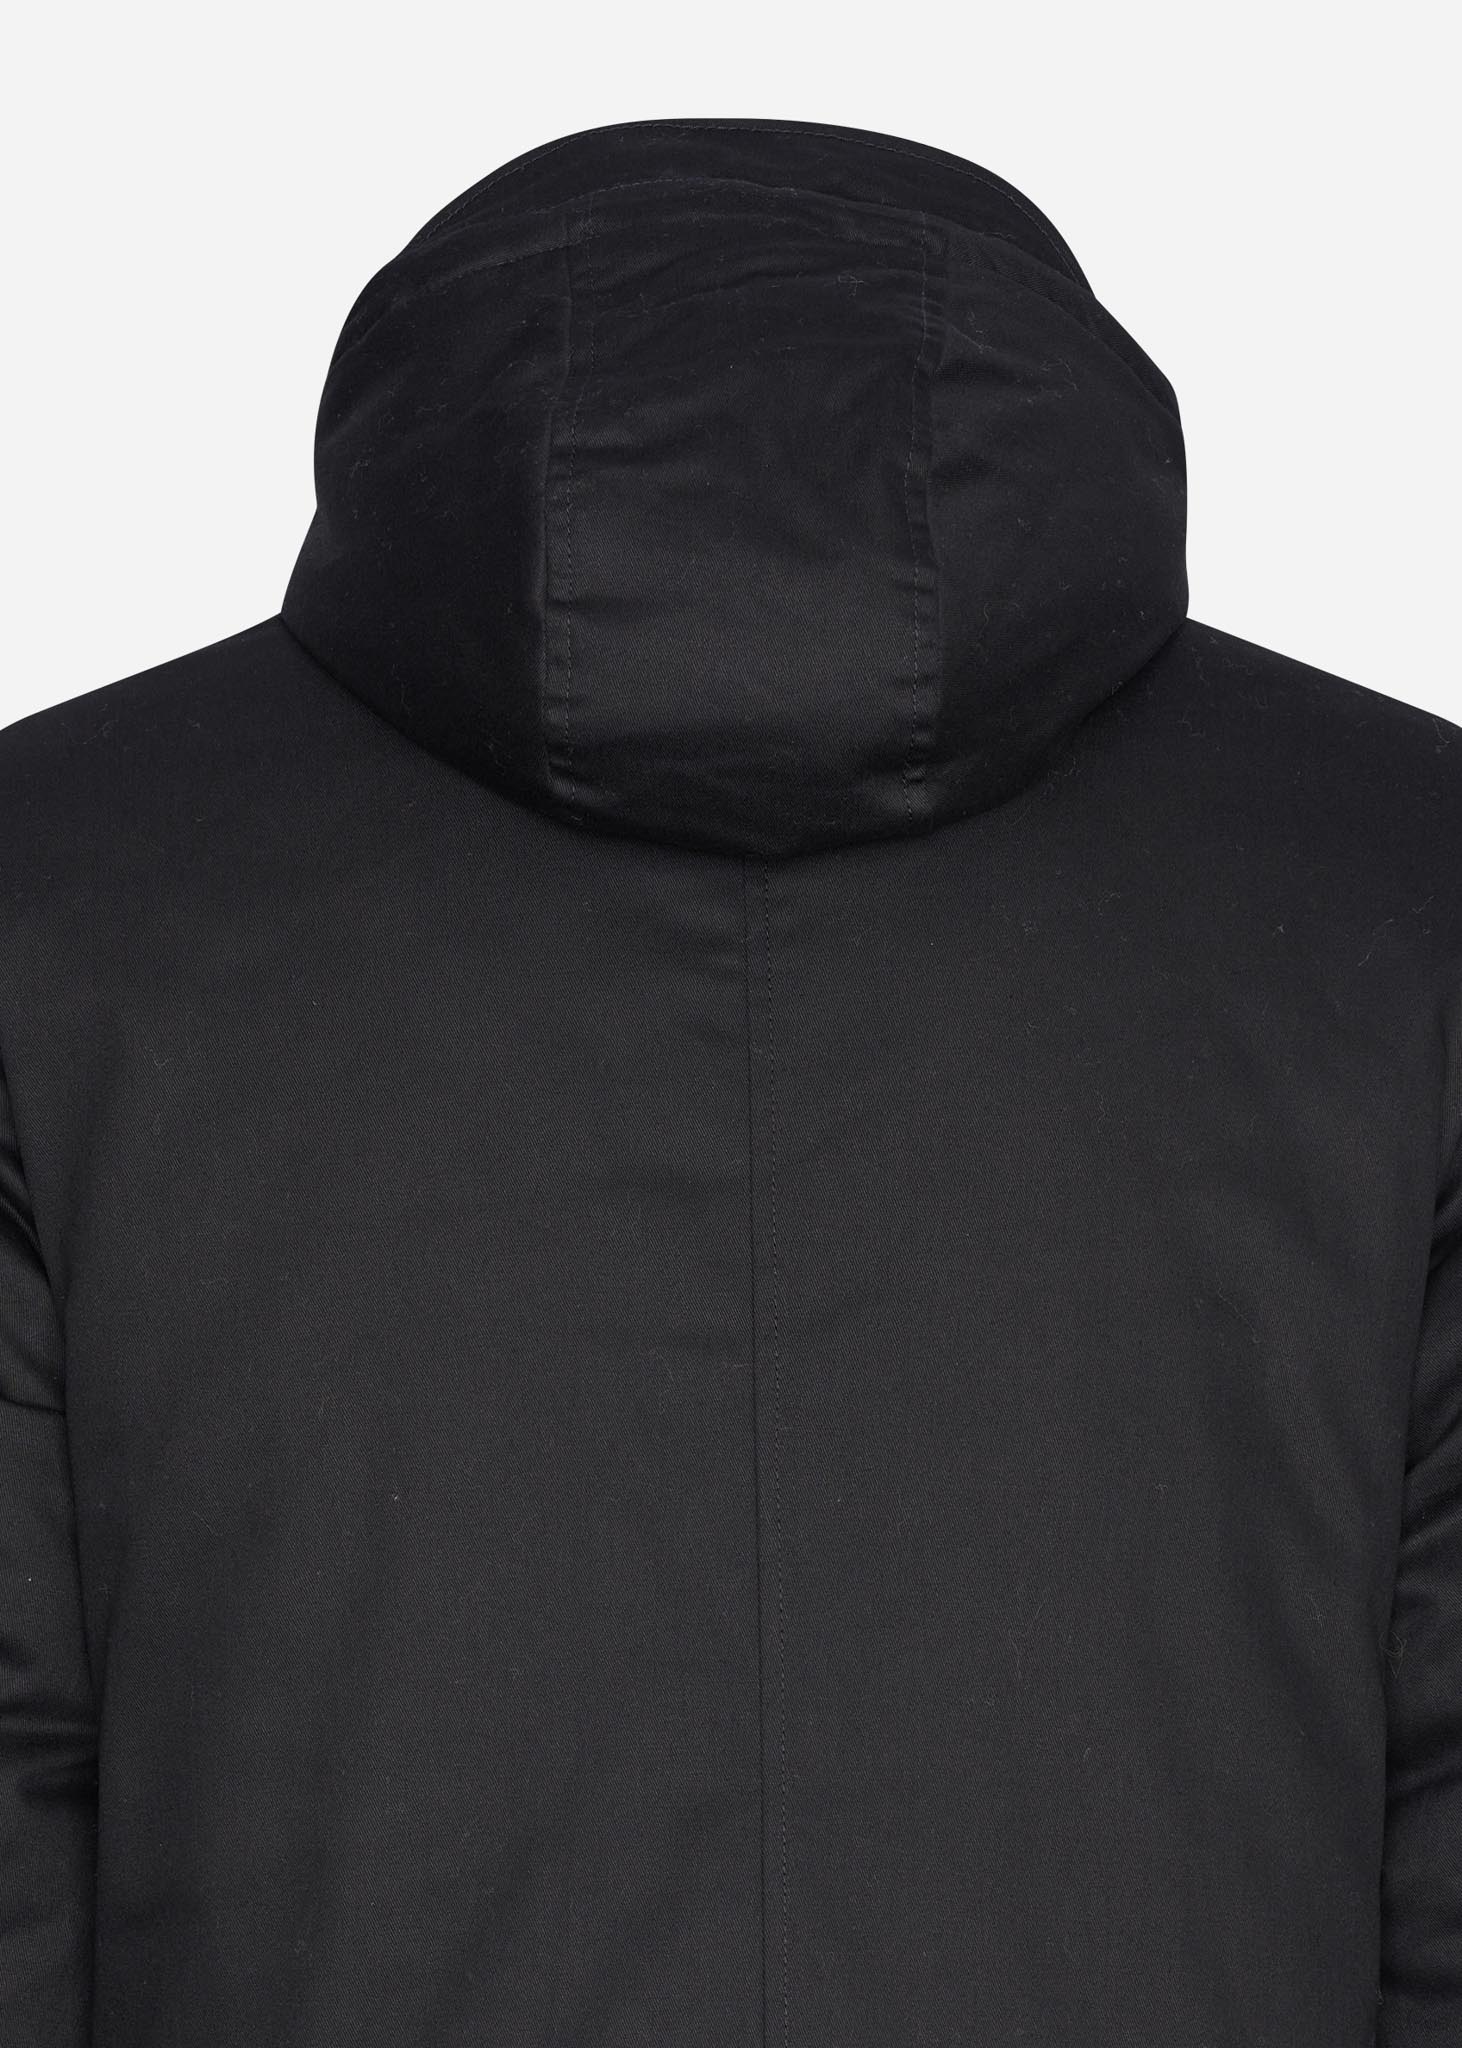 Ben Sherman jacket black